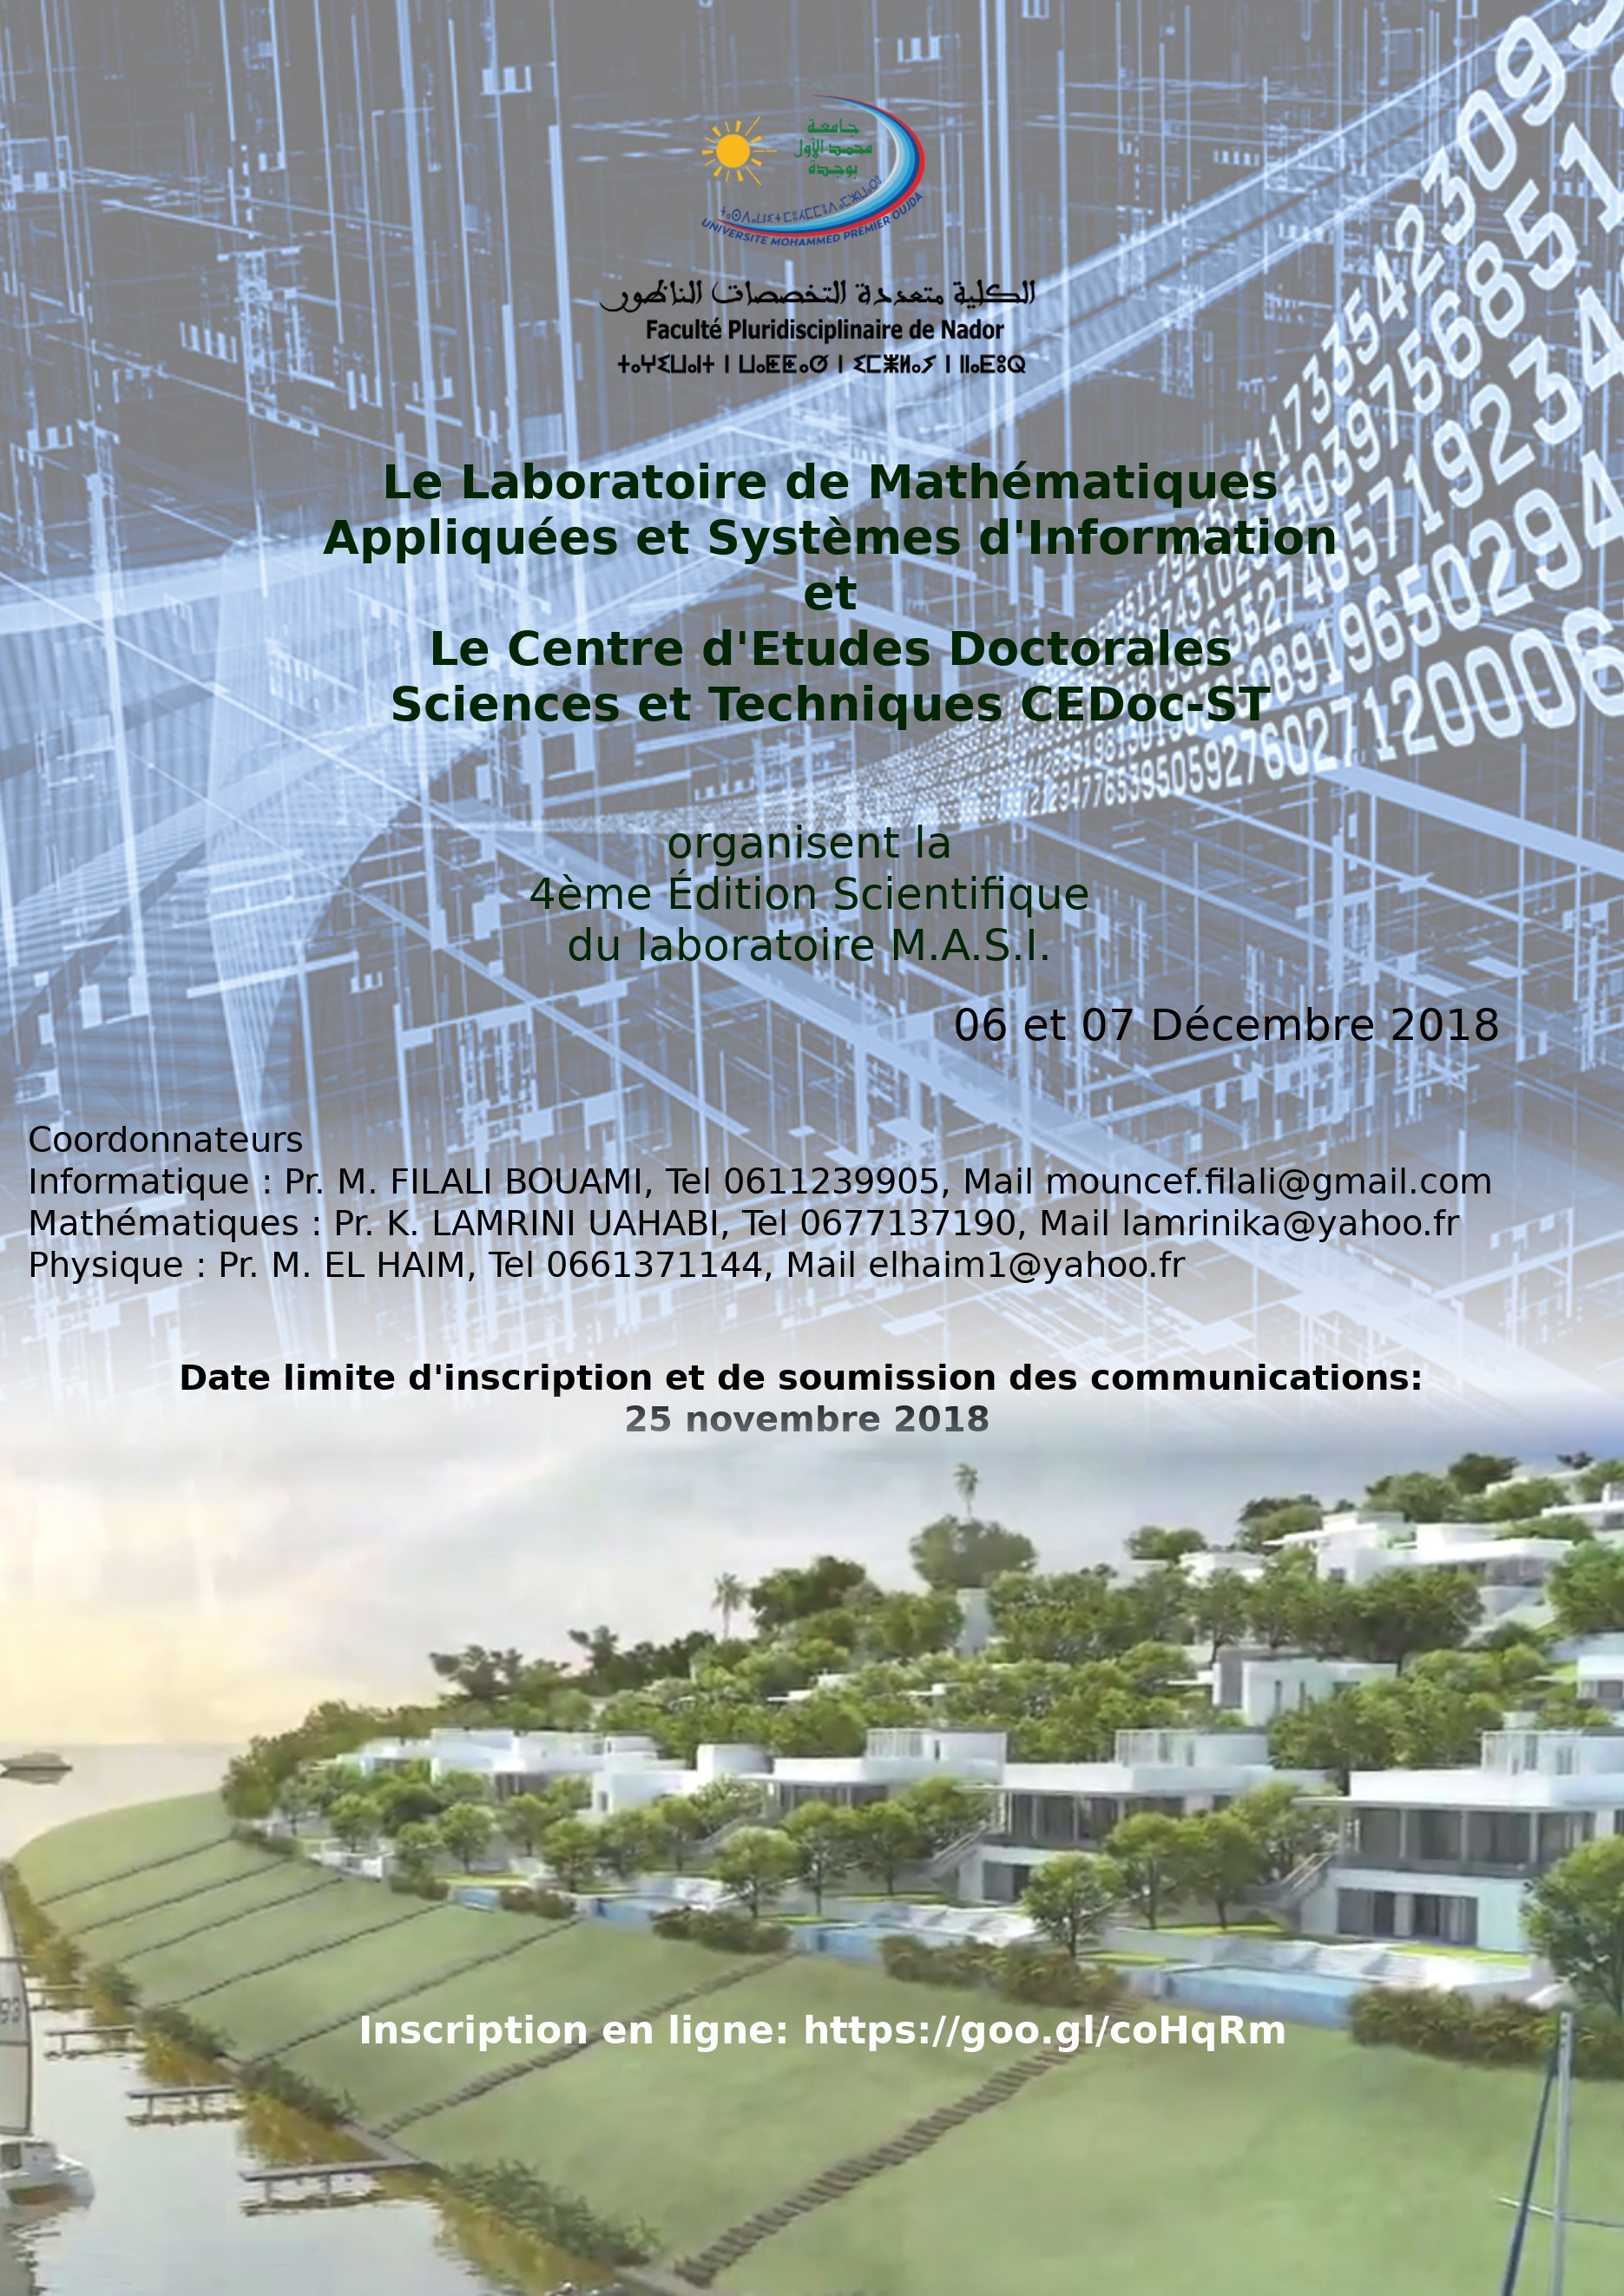 4 ème Edition Scientifique du laboratoire MASI en collaboration avec le CeDoc